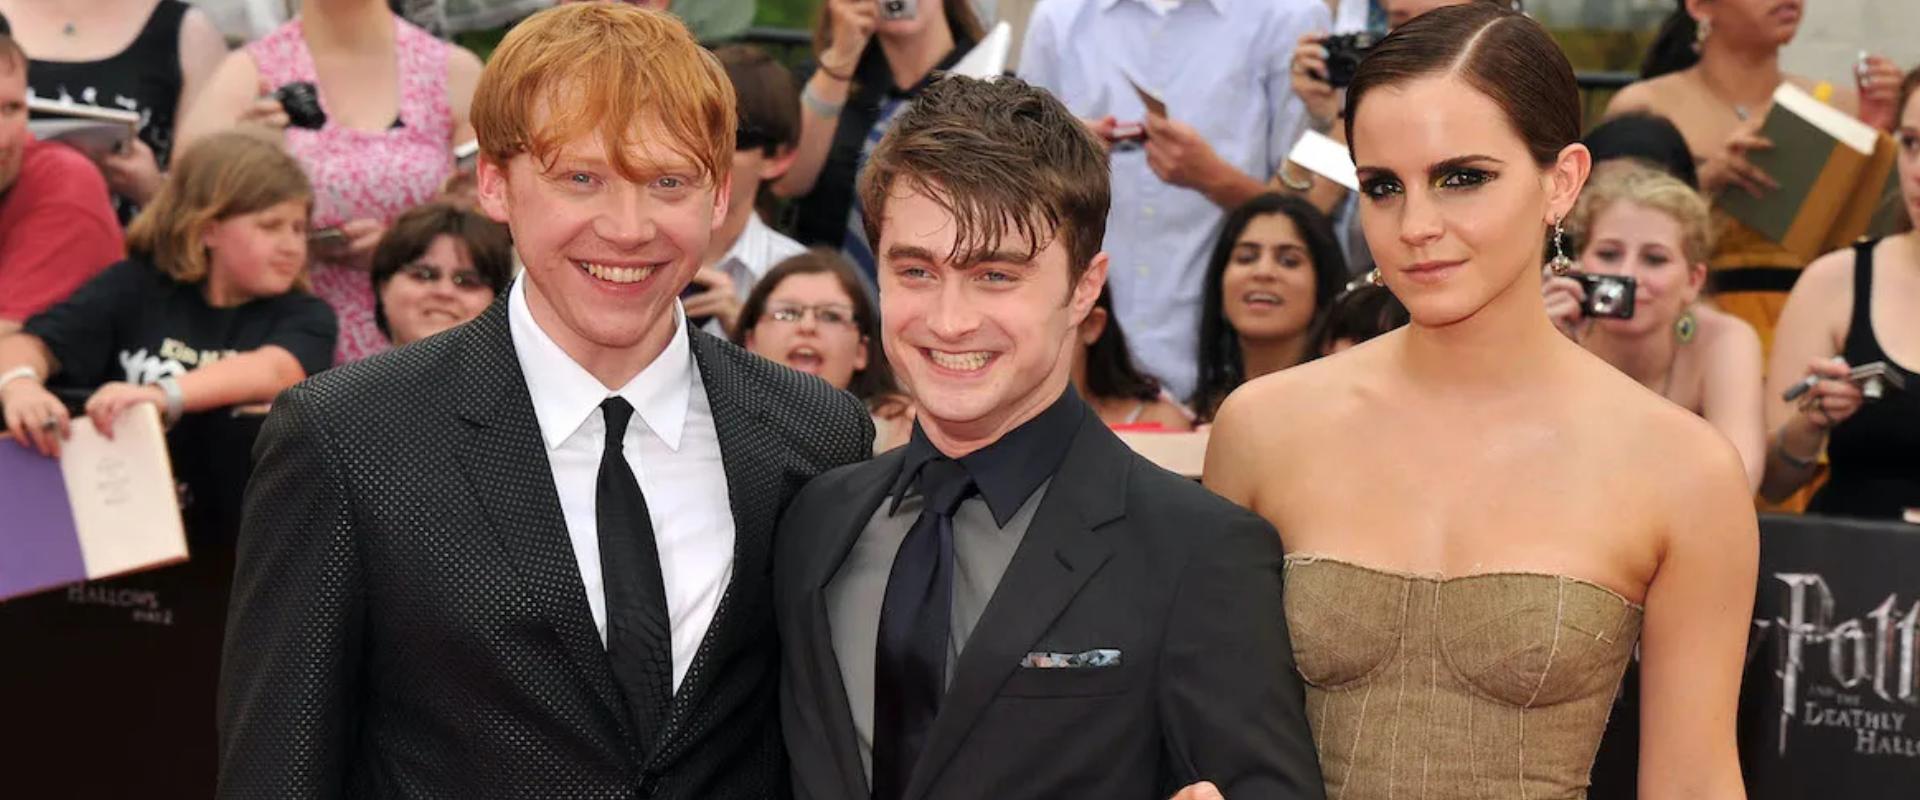 Így kellene kinézniük a Harry Potter filmek szereplőinek, ha a könyvekhez hűen ábrázolnák őket